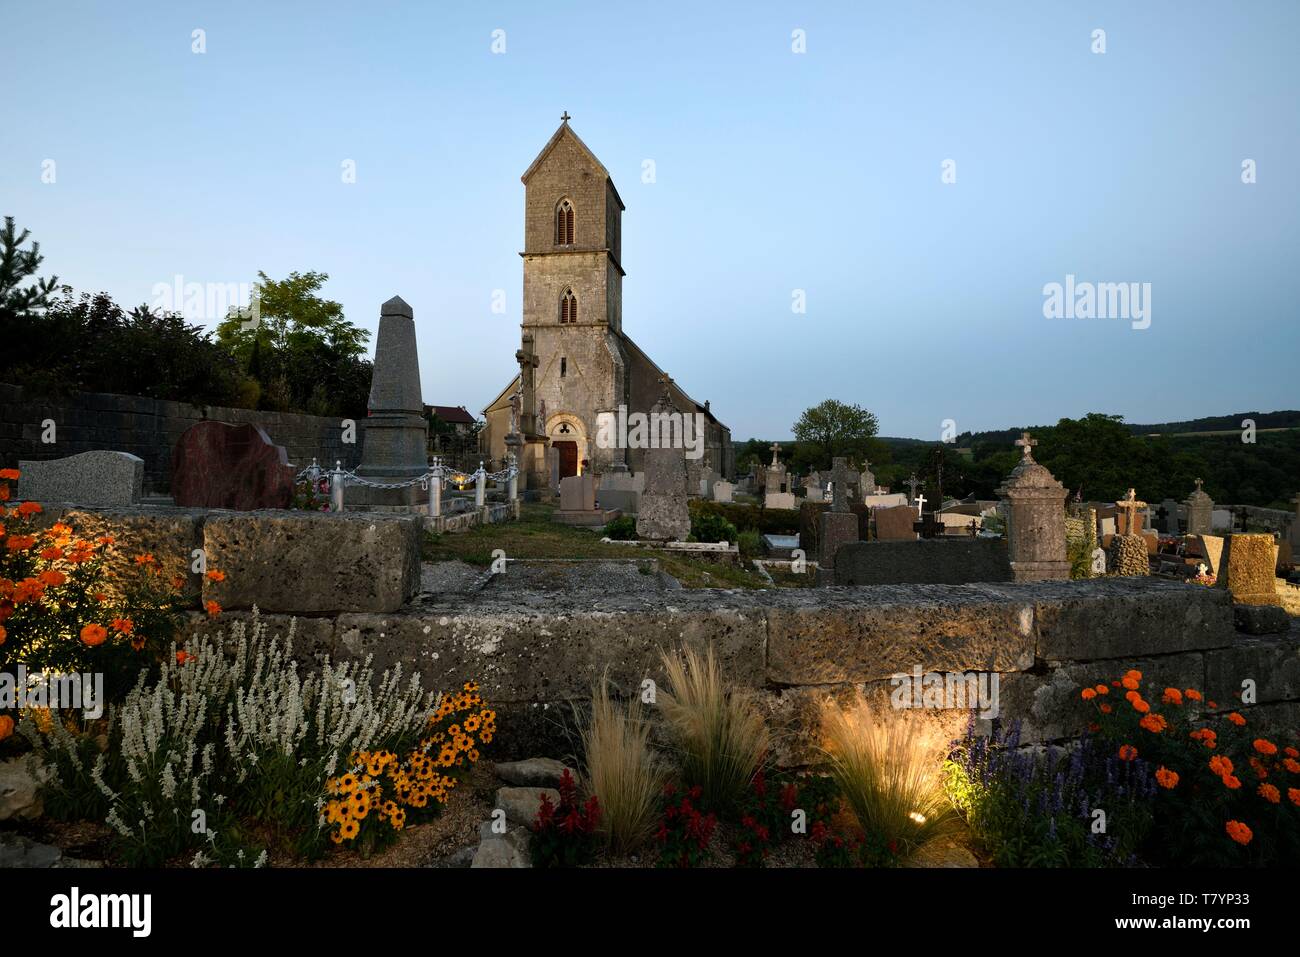 La France, Territoire de Belfort, Saint Dizier l eveque, église Saint Dizier en date du 11e siècle, cimetière, soirée d'illuminations Banque D'Images